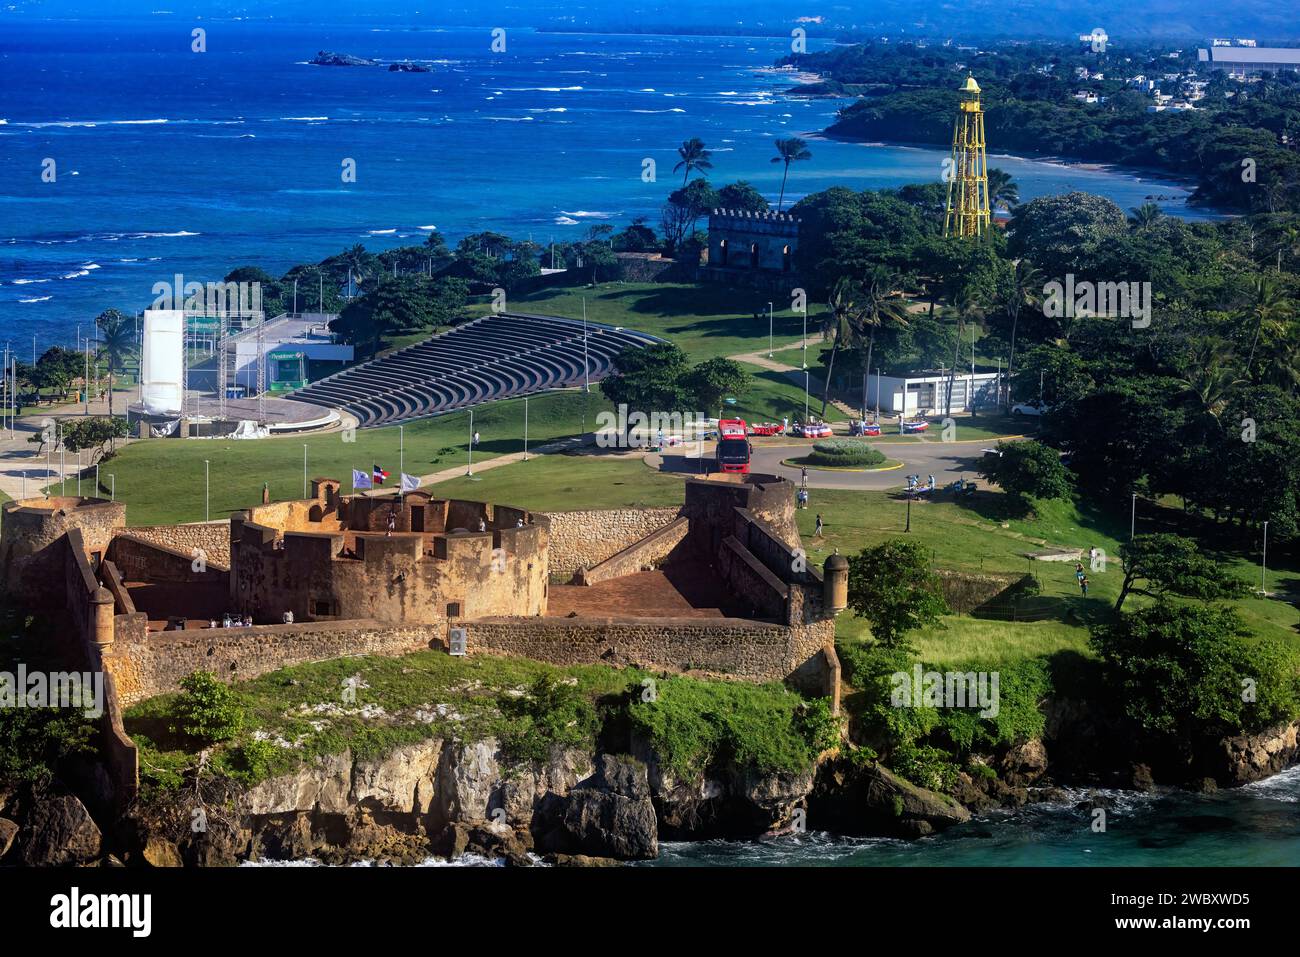 The historic San Felipe Fortress - Puerto Plata, Dominican Republic Stock Photo